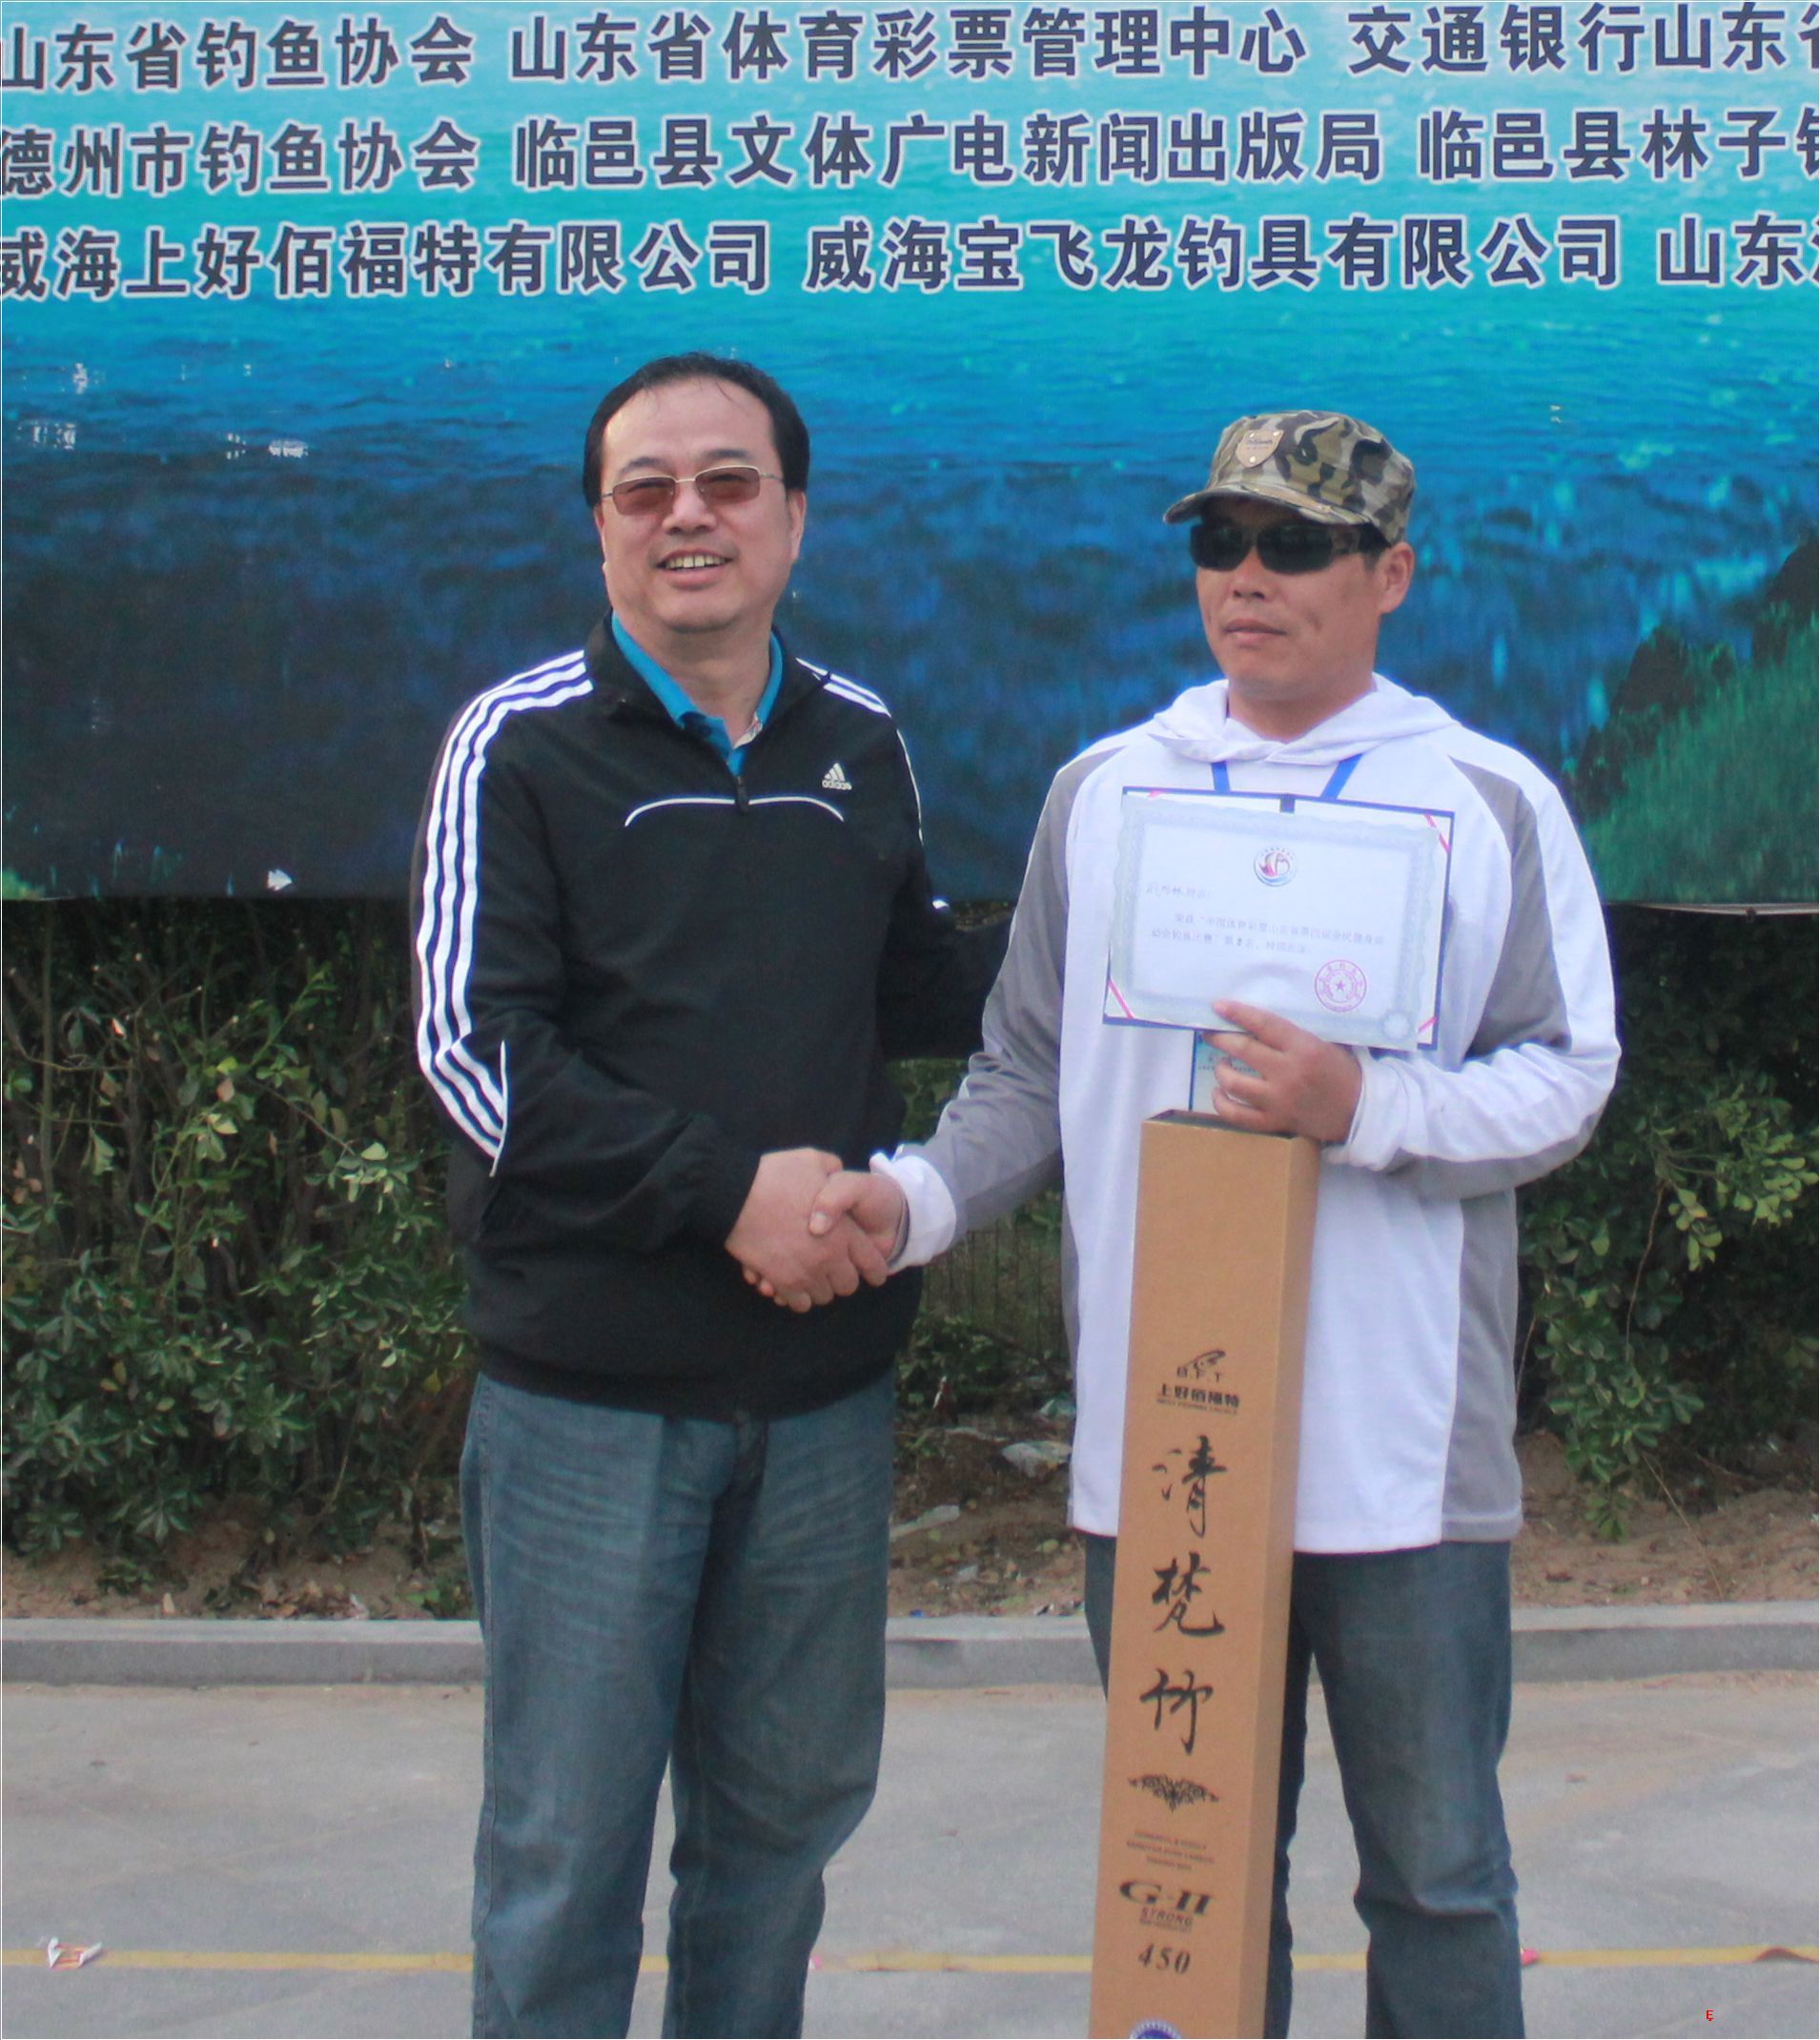 中国体育彩票山东省第四届全民健身运动会钓鱼比赛第二名